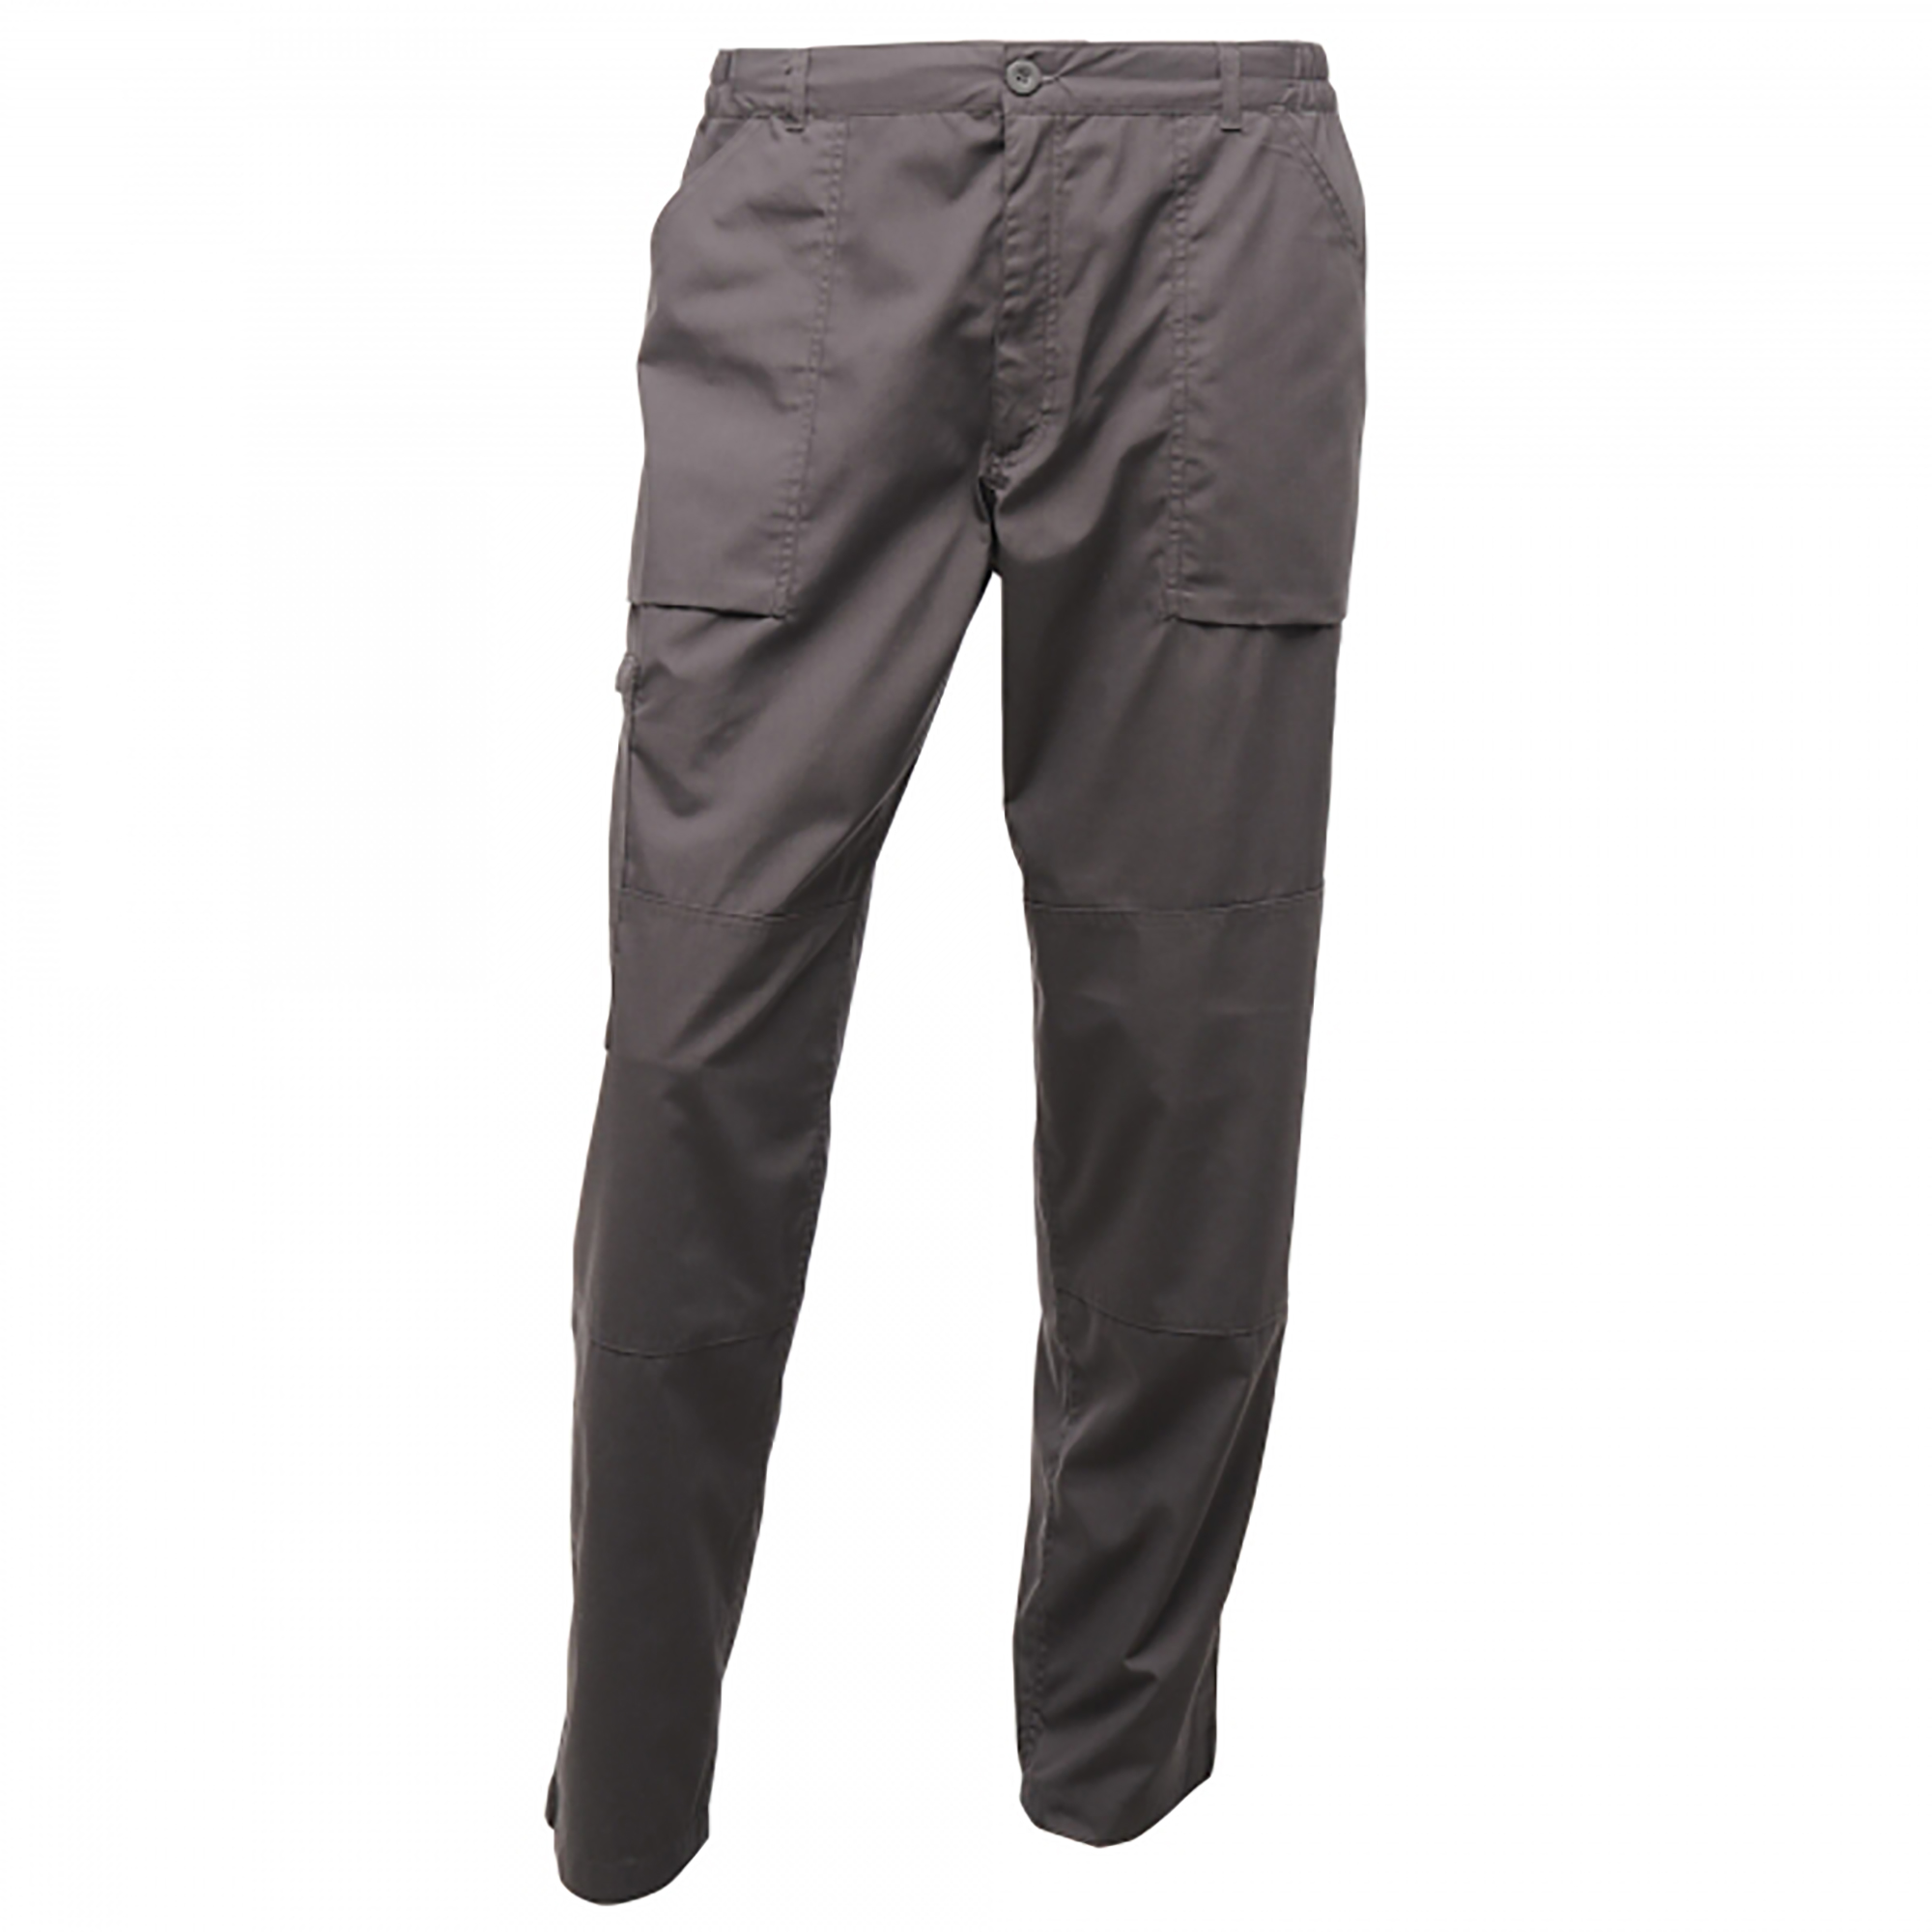 Pantalones Impermeables Regatta Action - gris - 